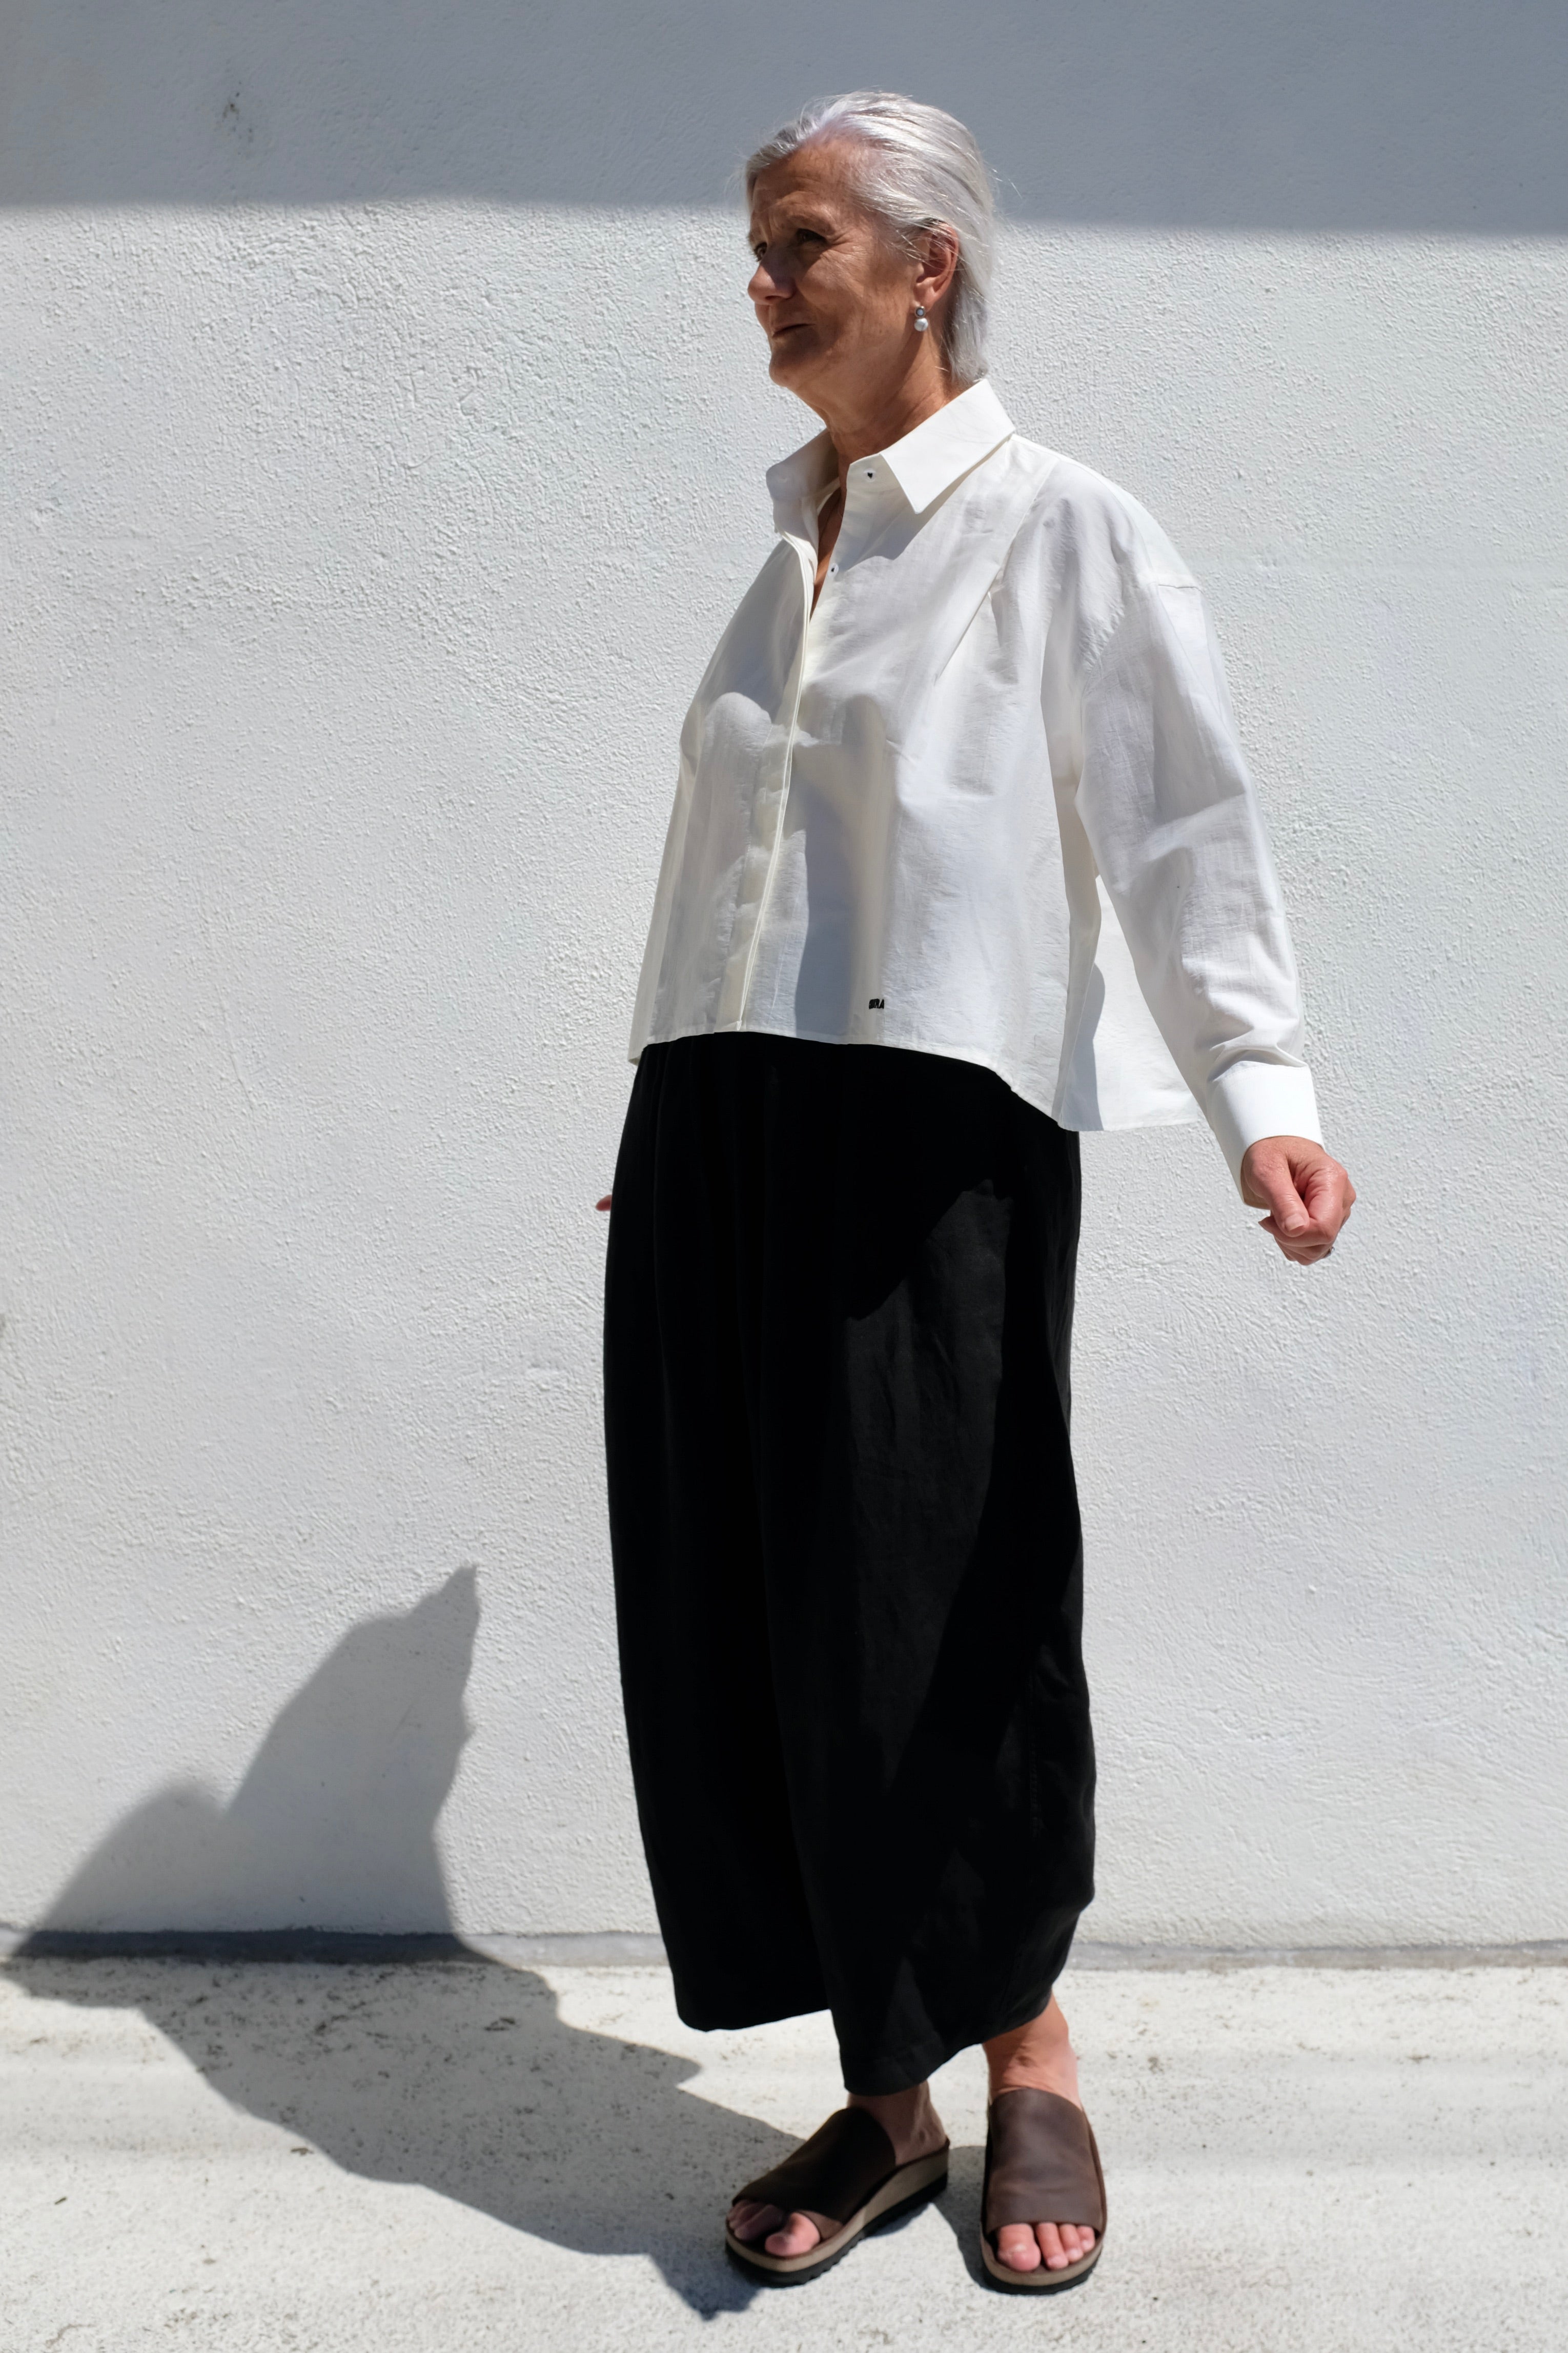 CORDERA Front Pleats Shirt / White